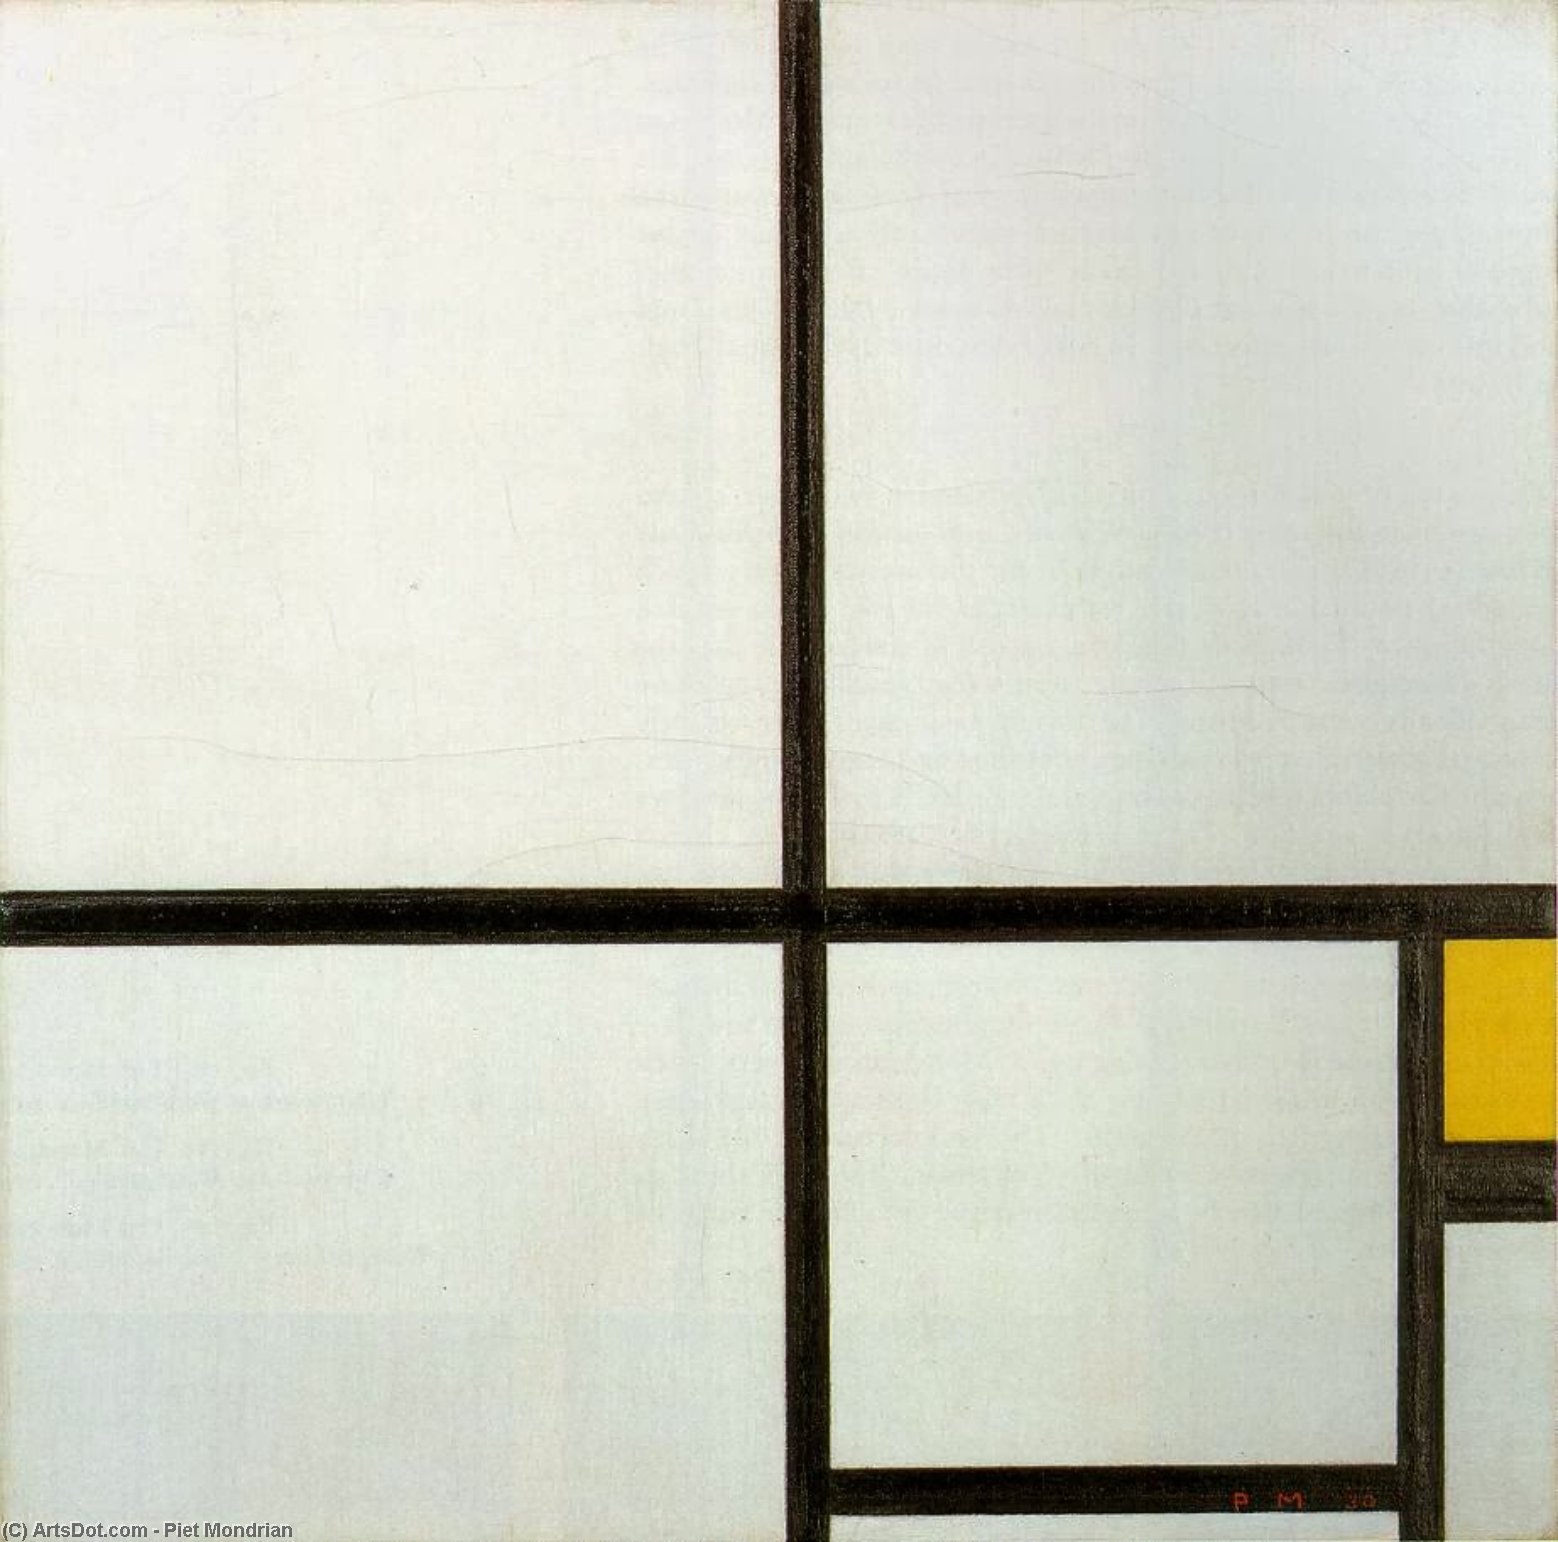 WikiOO.org - Enciclopédia das Belas Artes - Pintura, Arte por Piet Mondrian - Composition with yellow patch, Ku